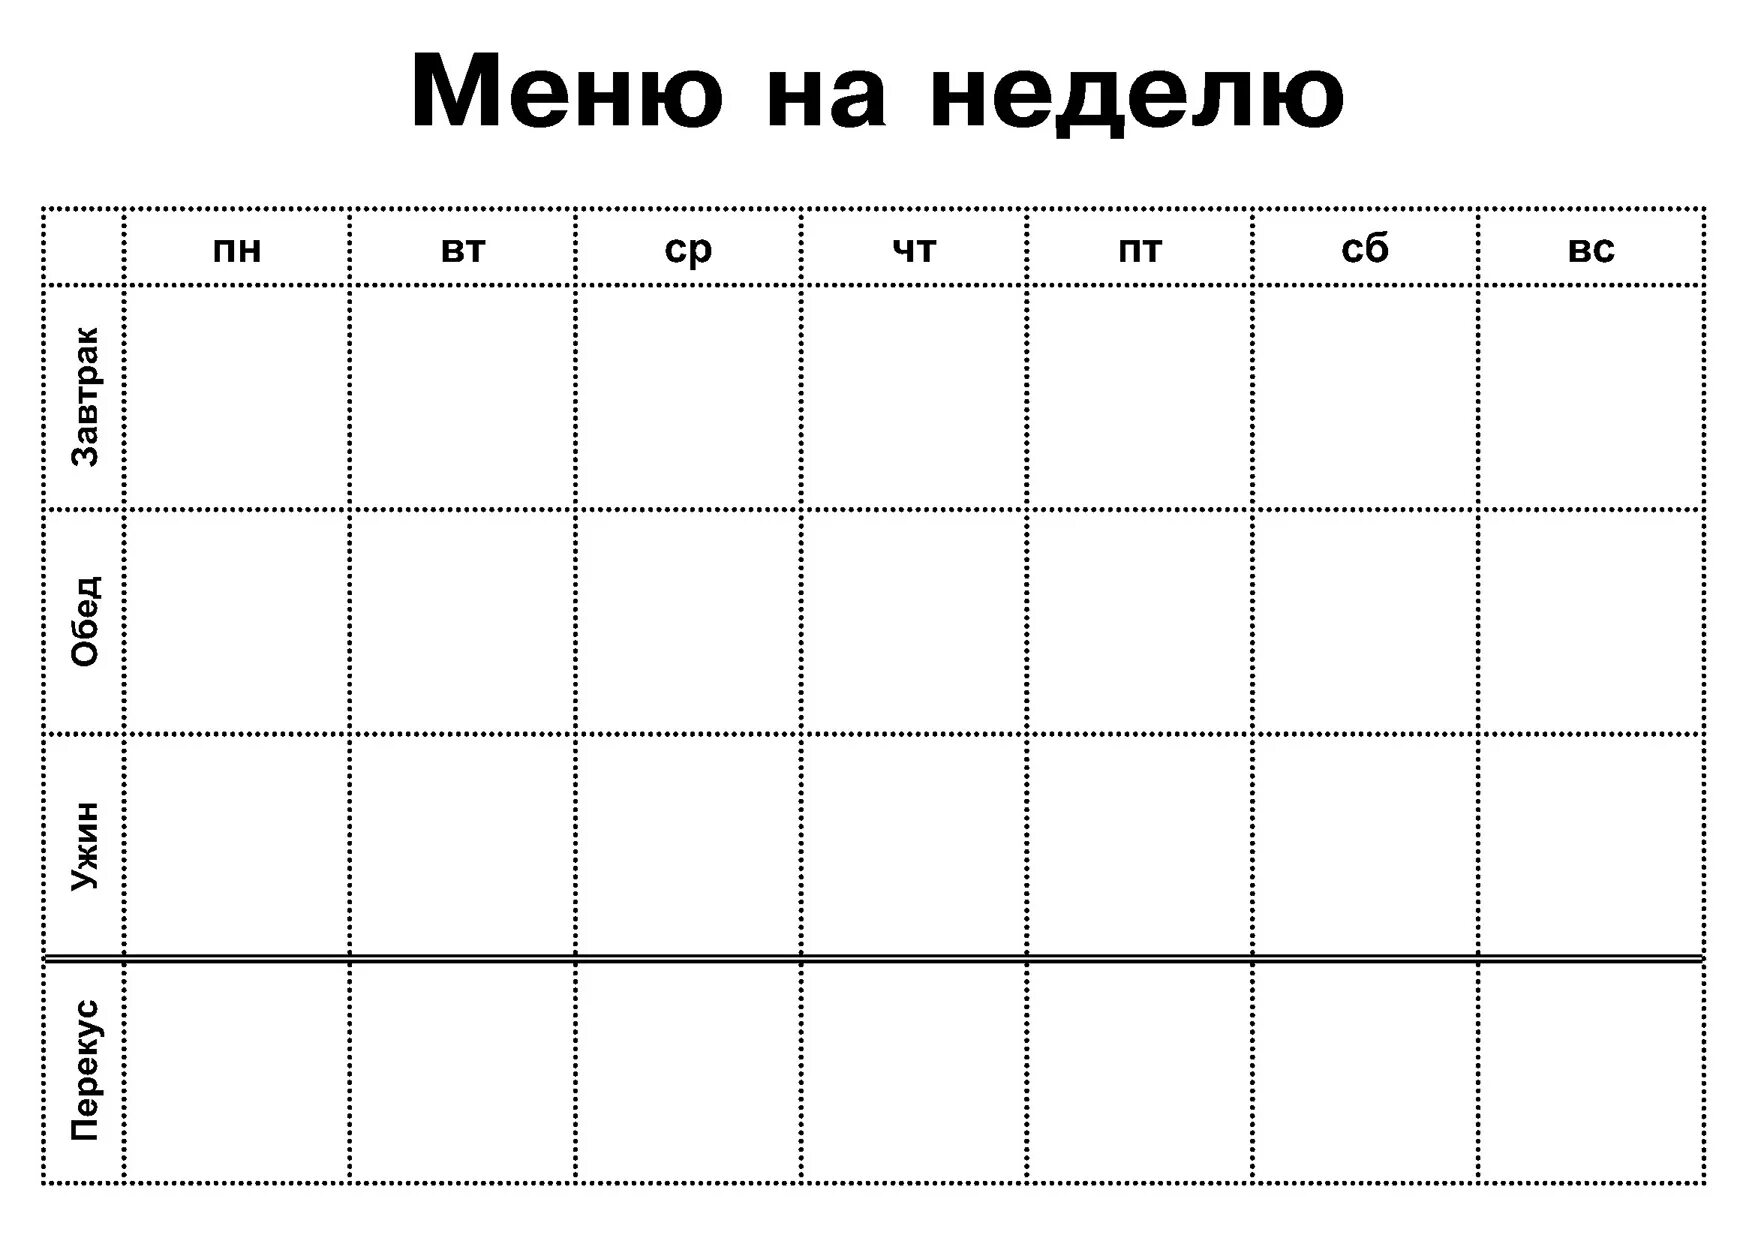 Таблица меню человека. Таблица для составления меню на неделю для семьи. Меню на неделю таблица для заполнения. Таблица меню на неделю пустая. Недельное меню таблица.